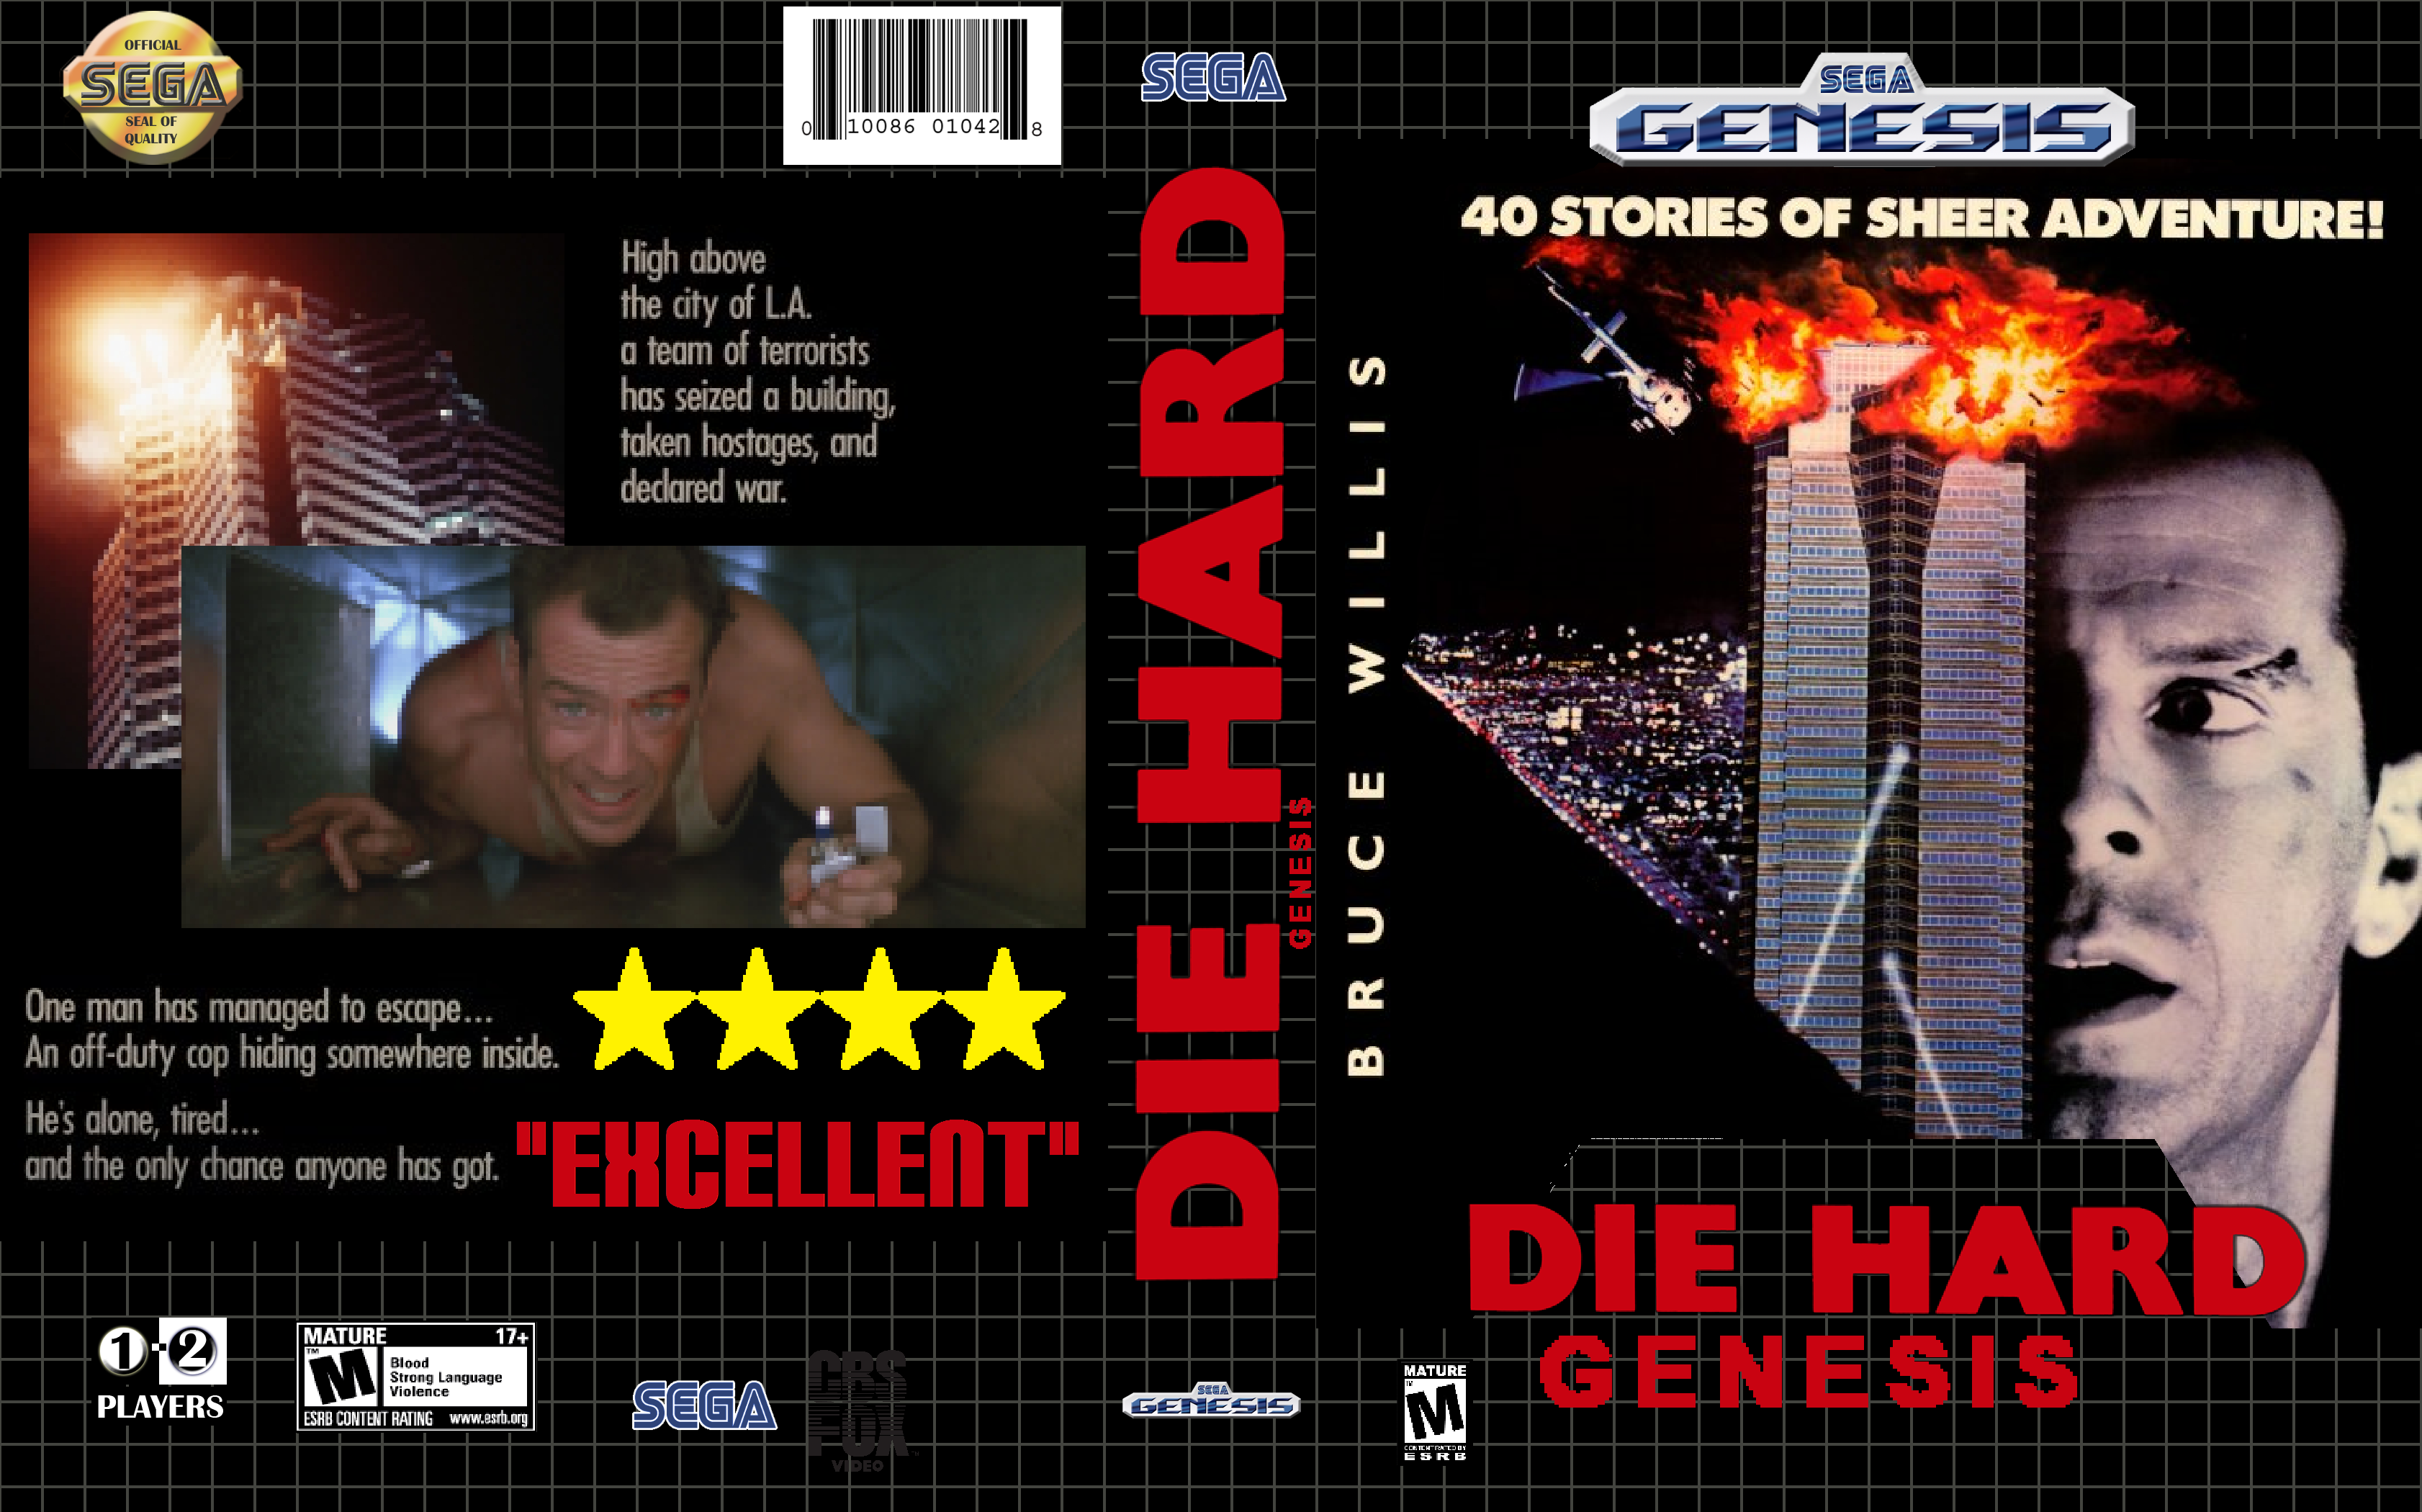 Die Hard Genesis box cover